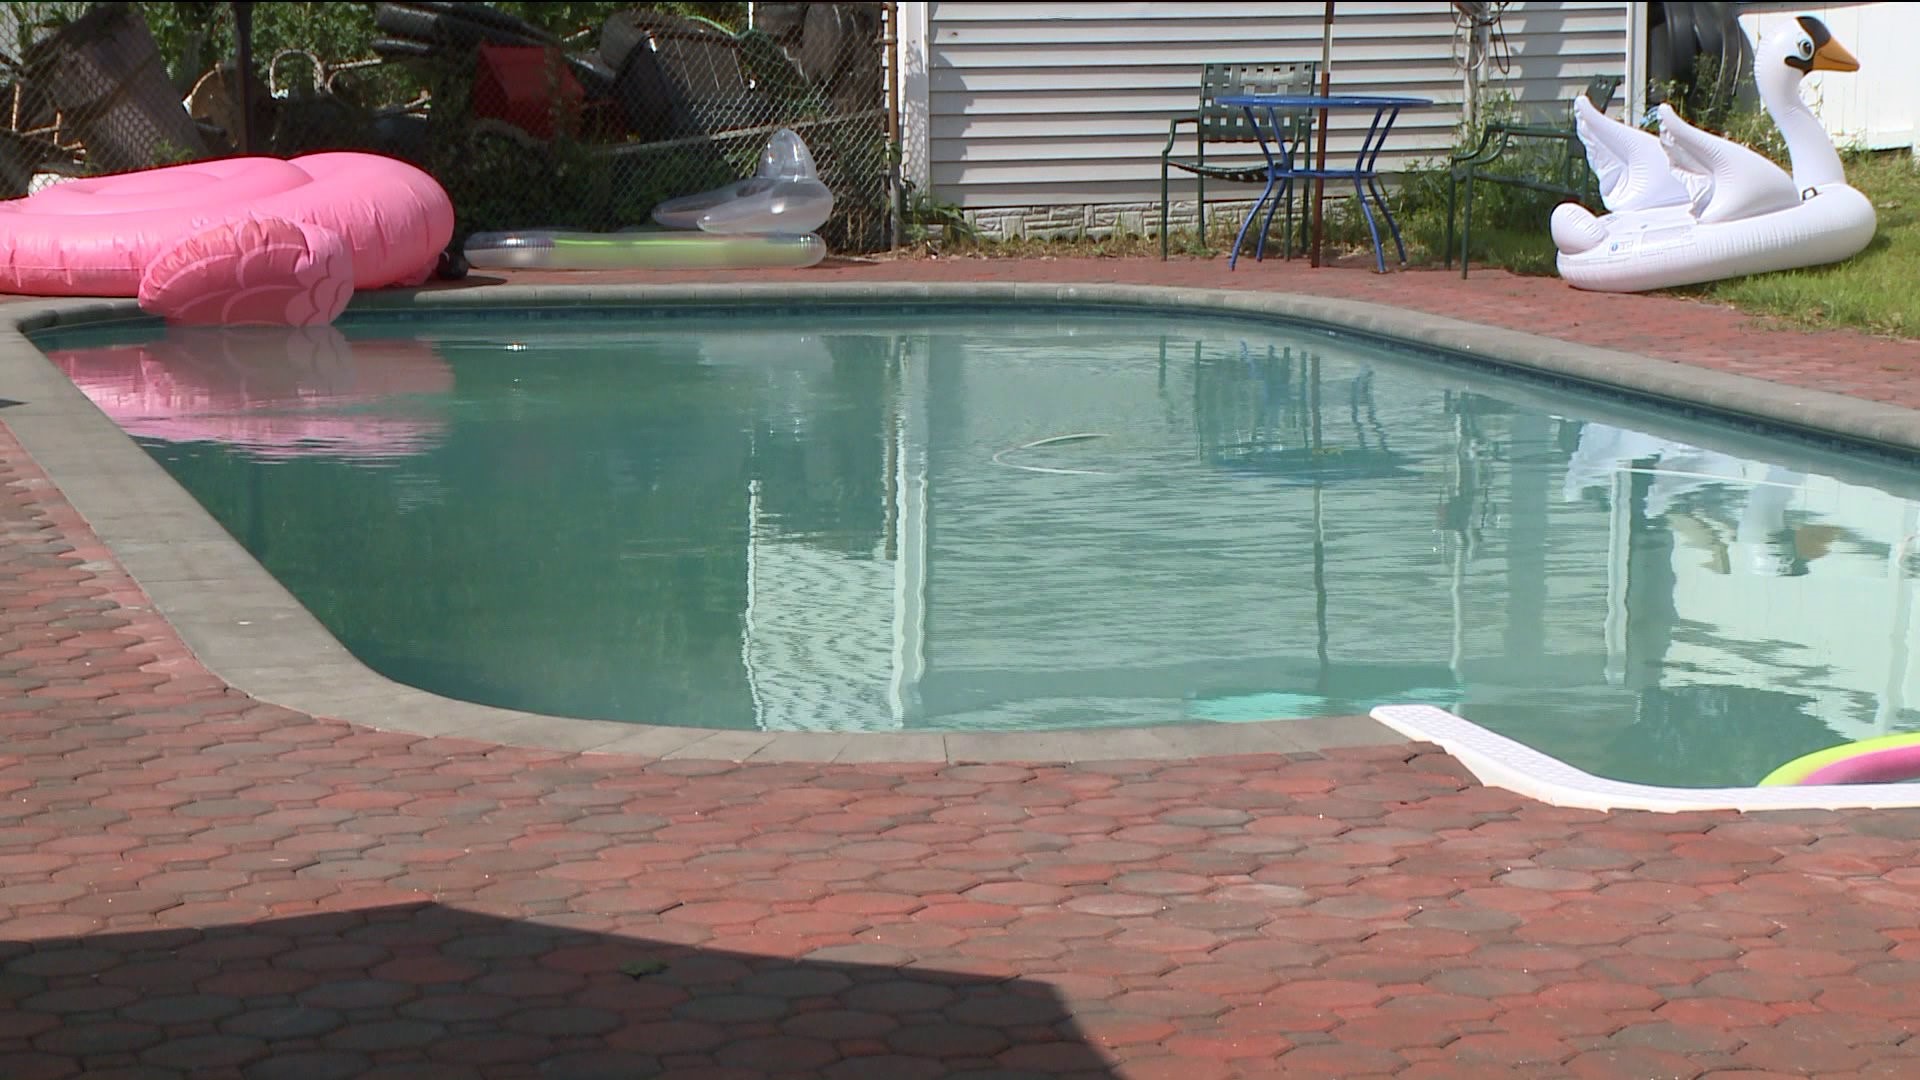 Waterbury police: 10 year old drowns in pool